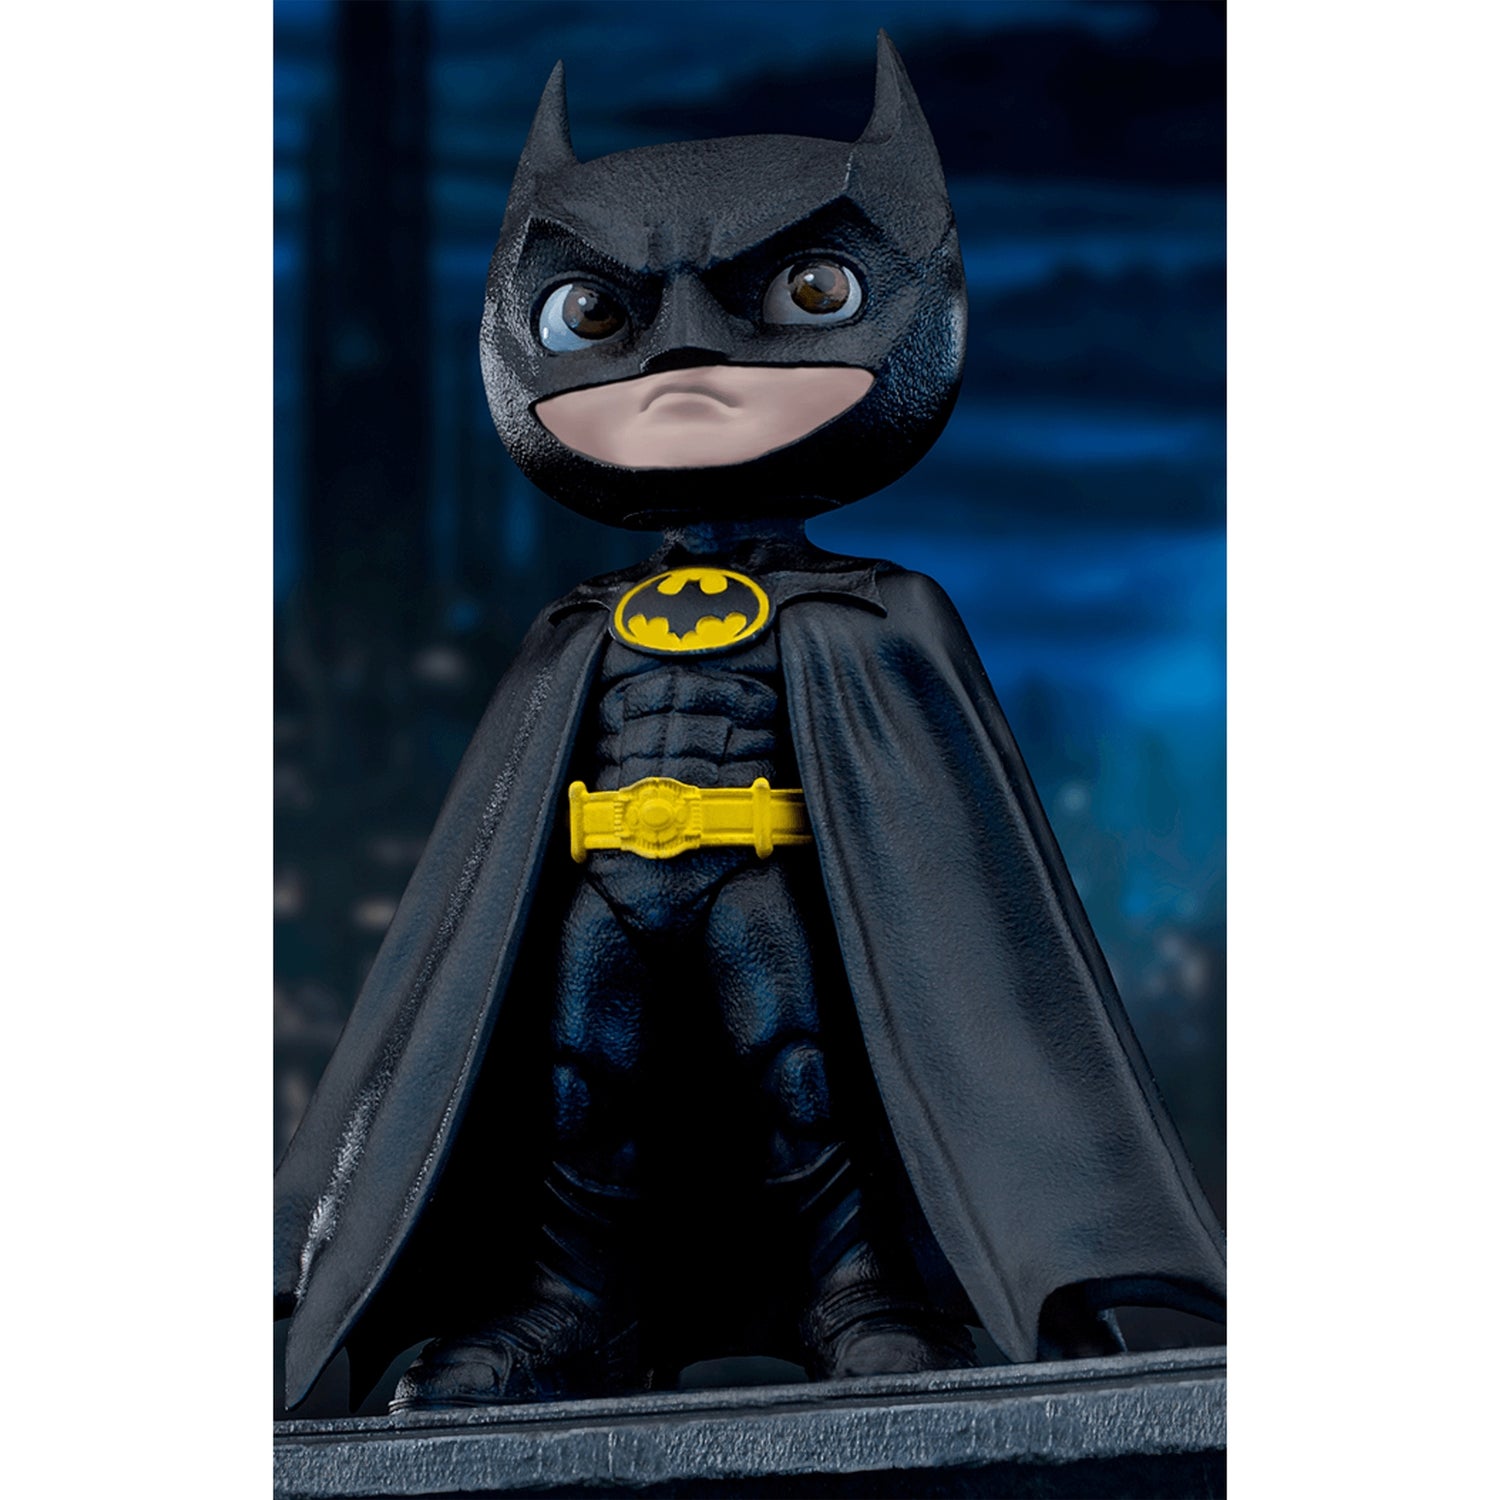 Iron Studios Batman Batman (1989) Minico Figure (18cm)